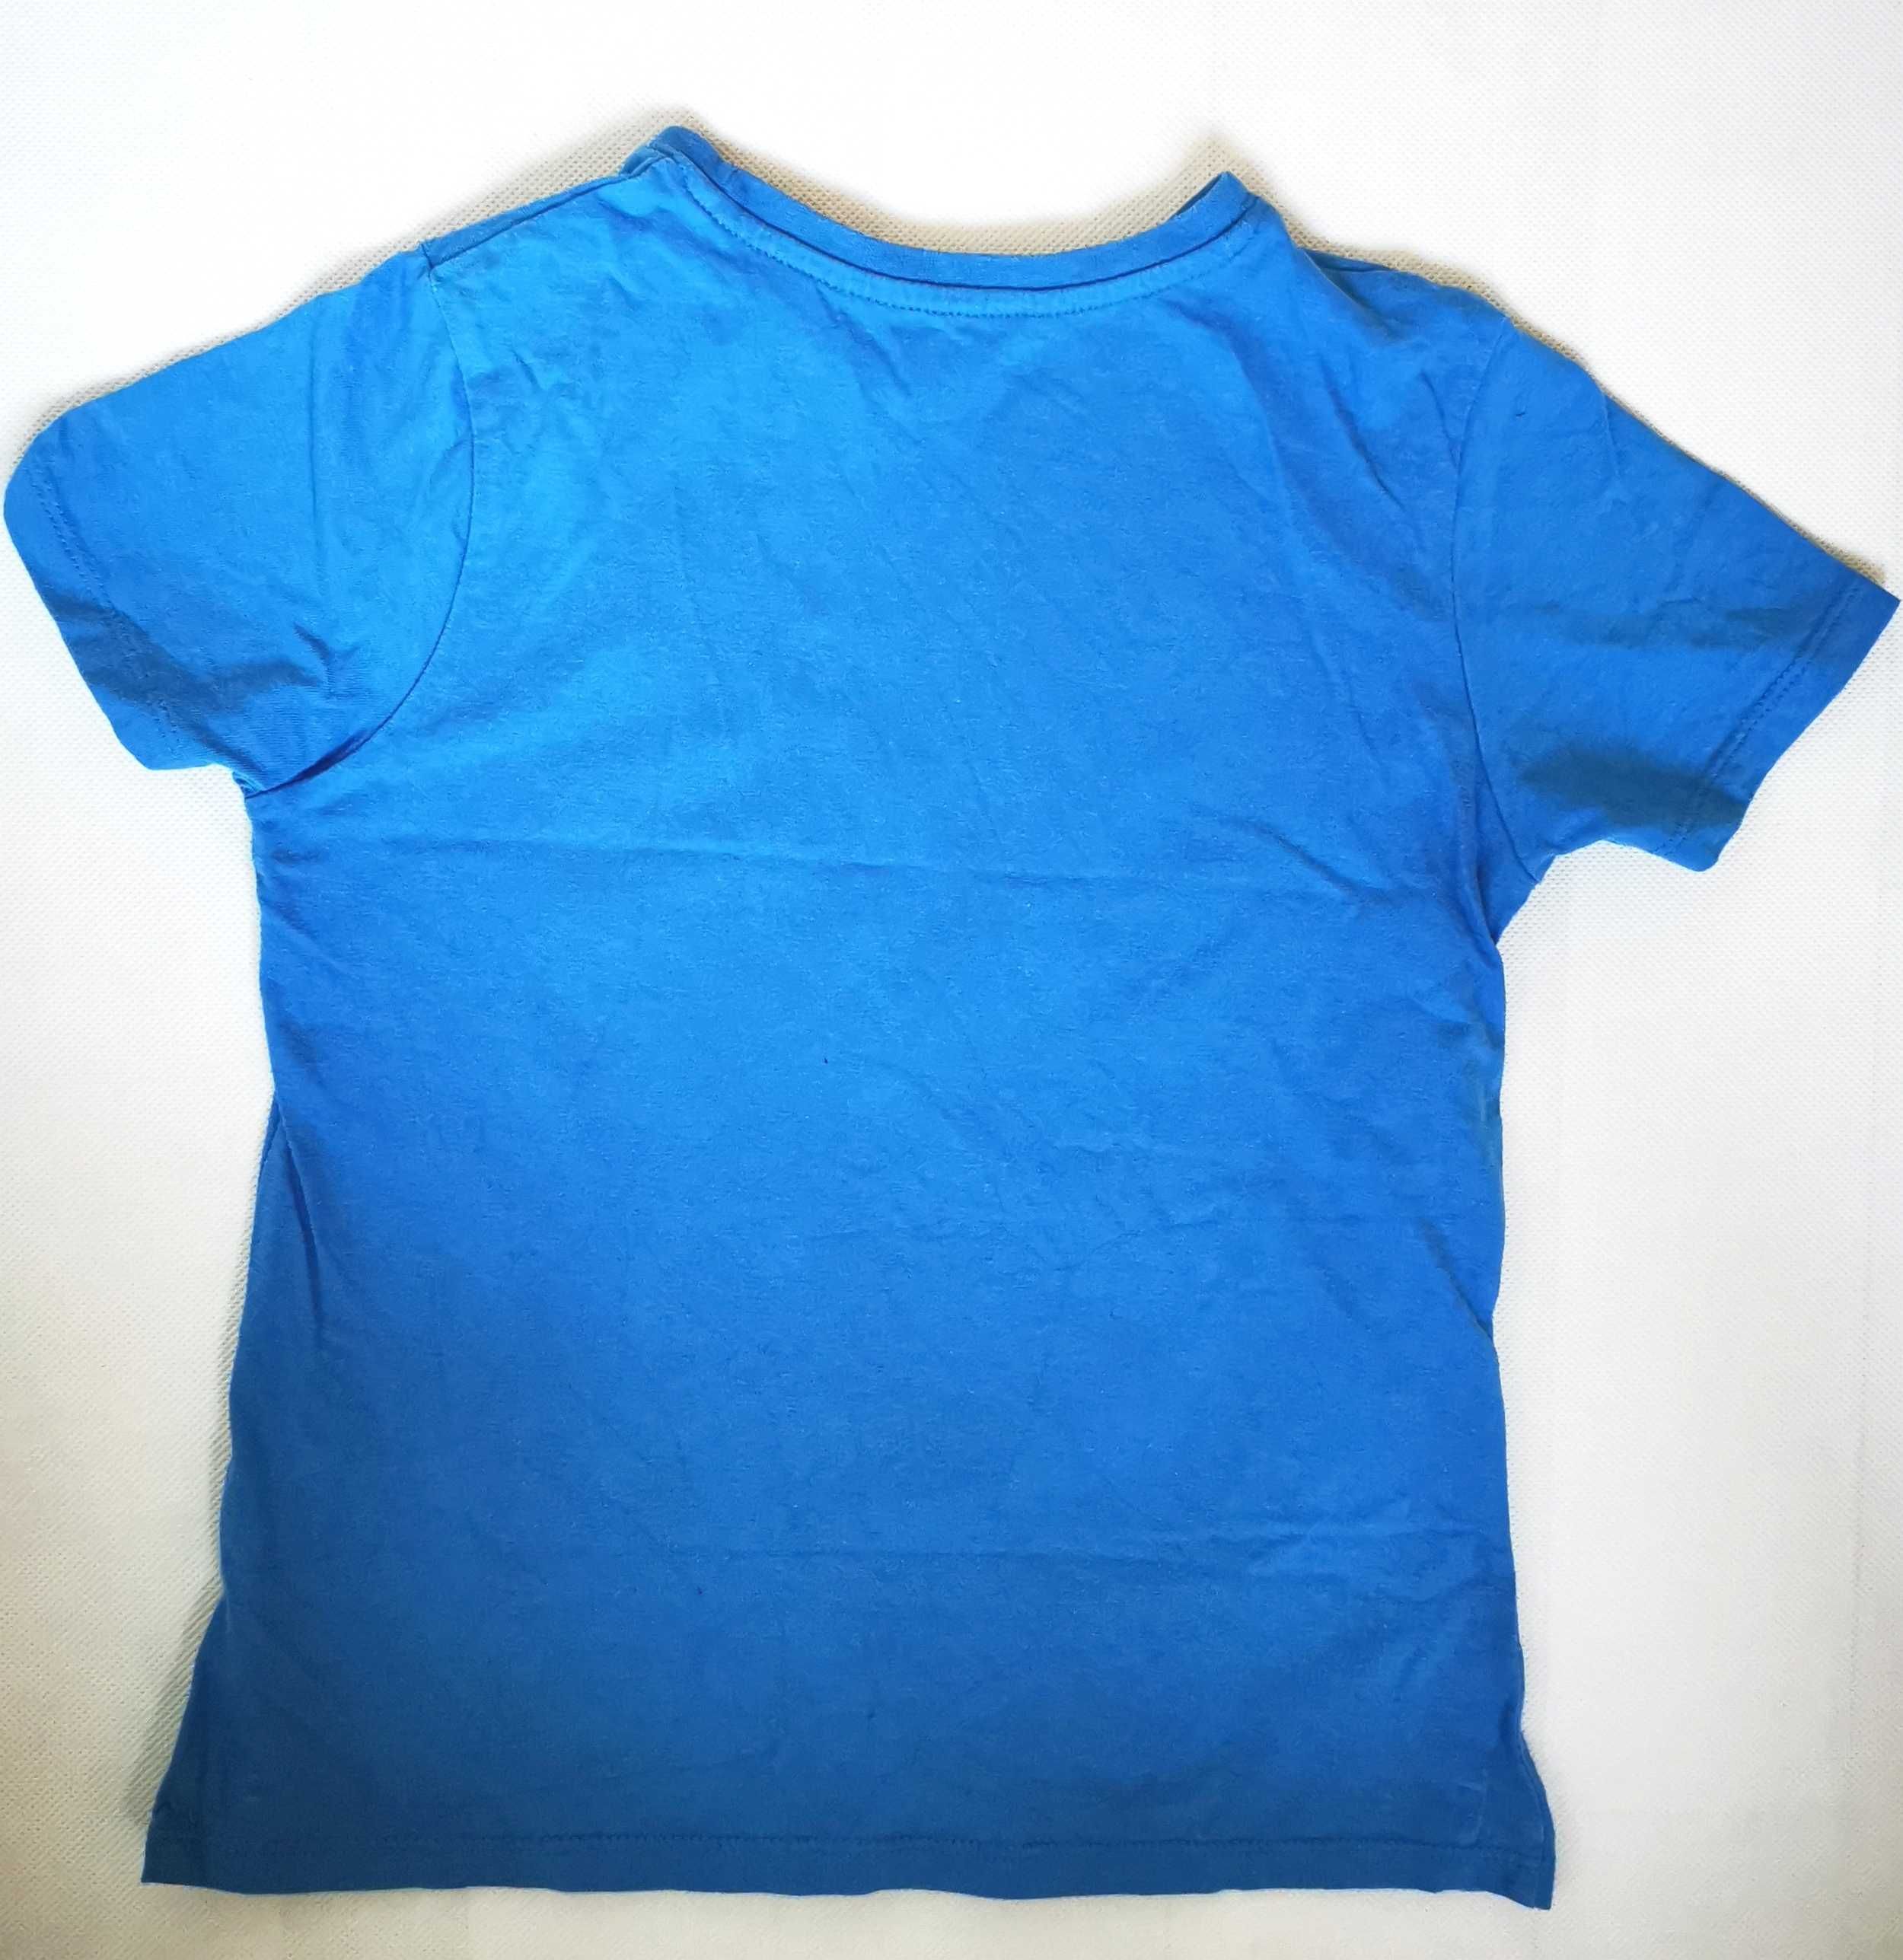 Rebel, T-shirt chłopięcy, 7-8 lat, 128 cm.